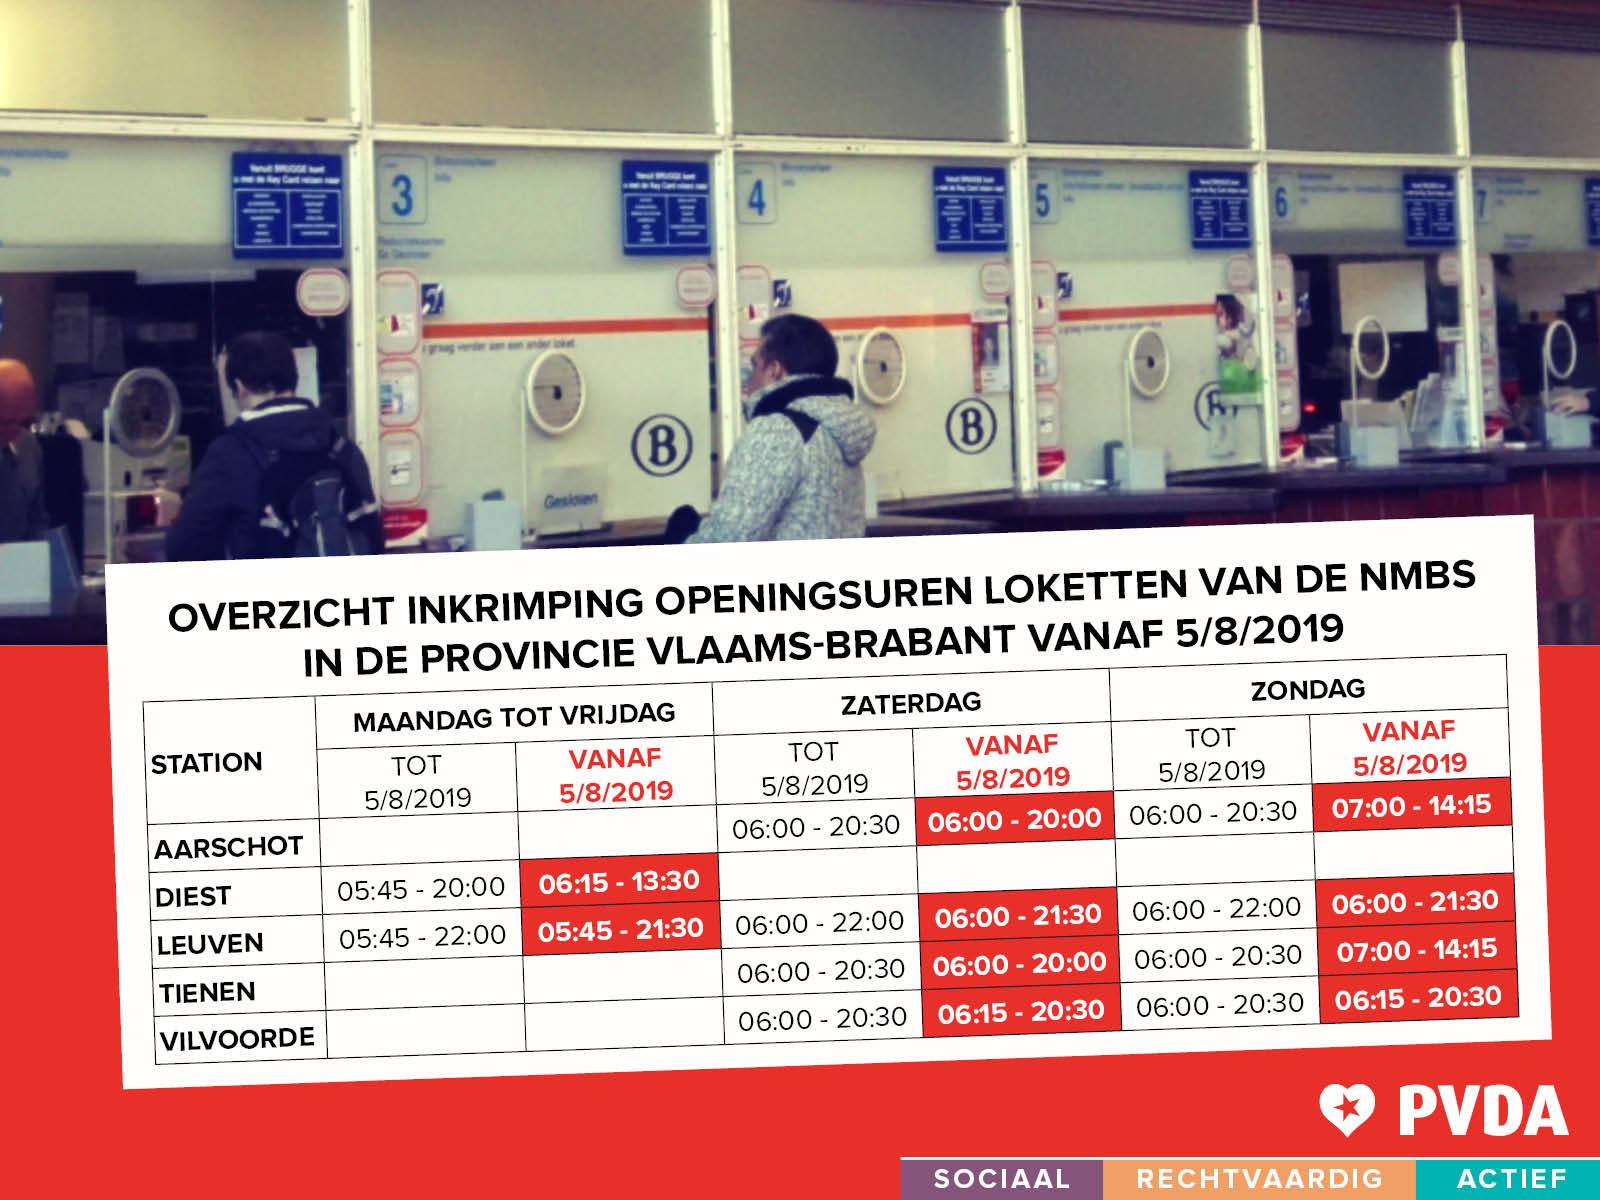 Aarschot, Diest, Leuven, Tienen en Vilvoorde: PVDA voert actie tegen permanente minimale dienstverlening aan de stationsloketten